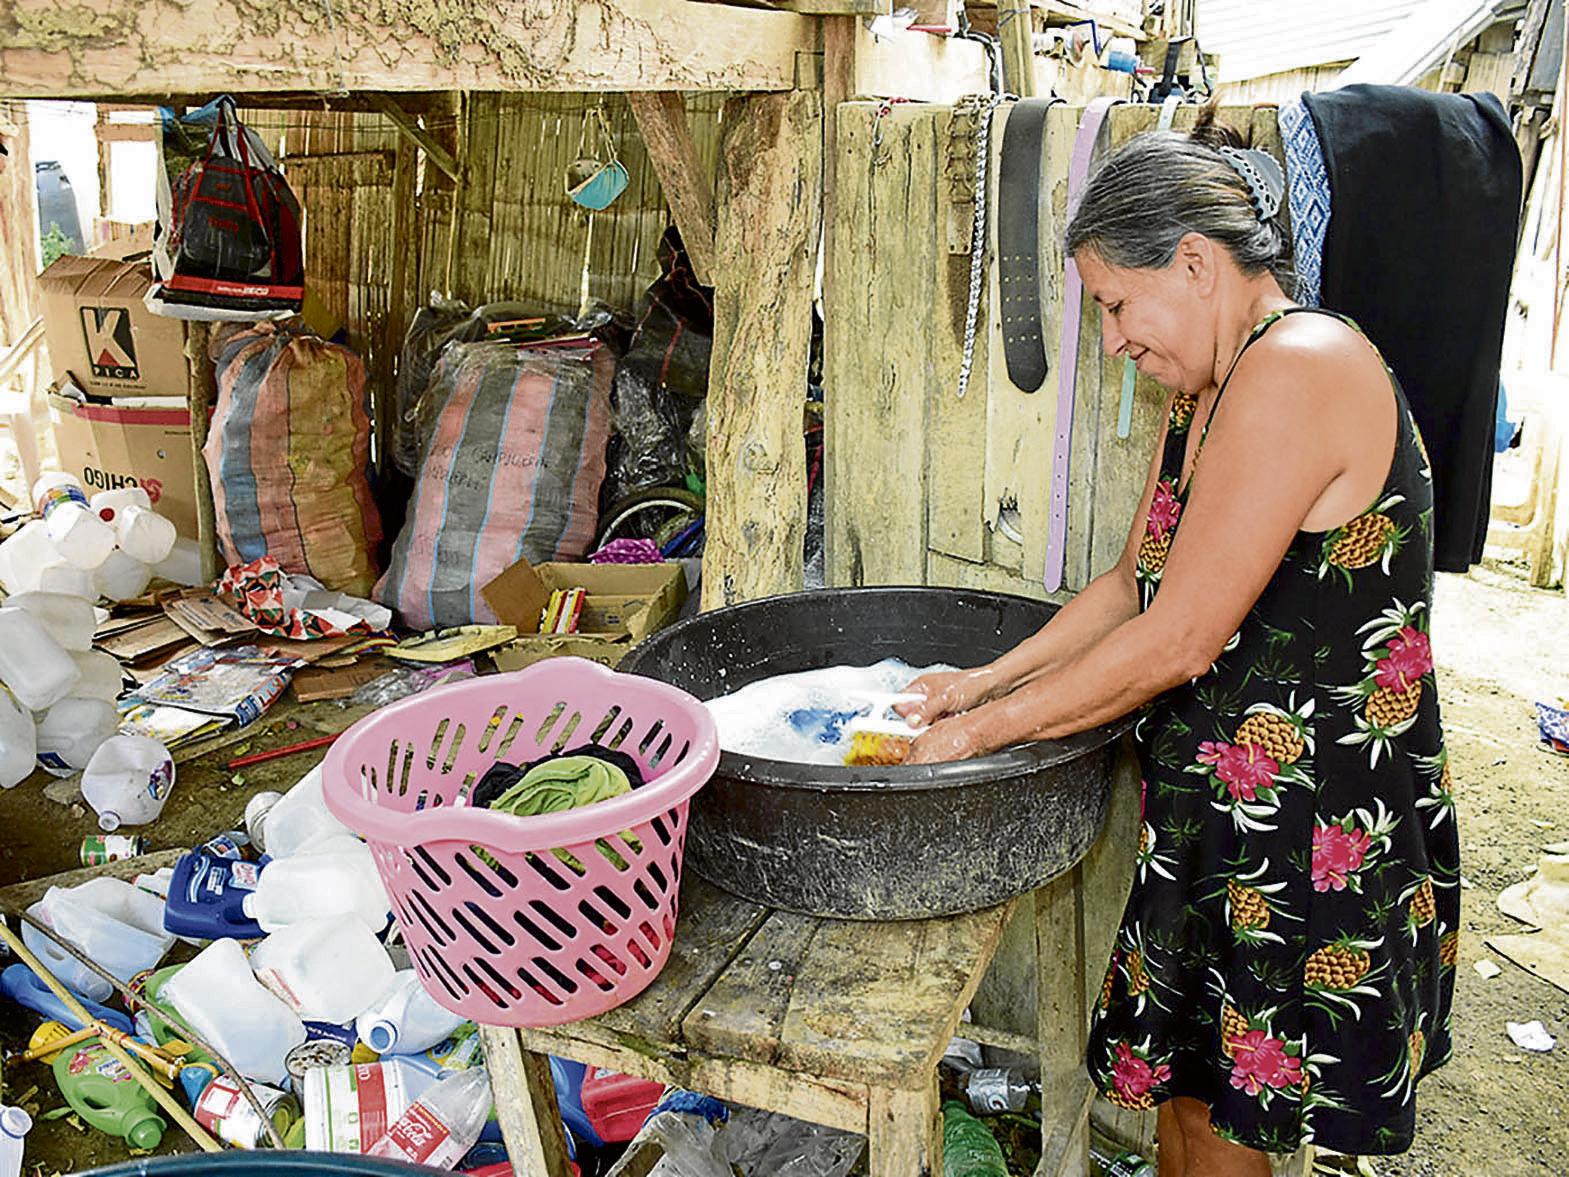 facil de manejar aparato Manía La ropa se lava mejor a mano” | El Diario Ecuador